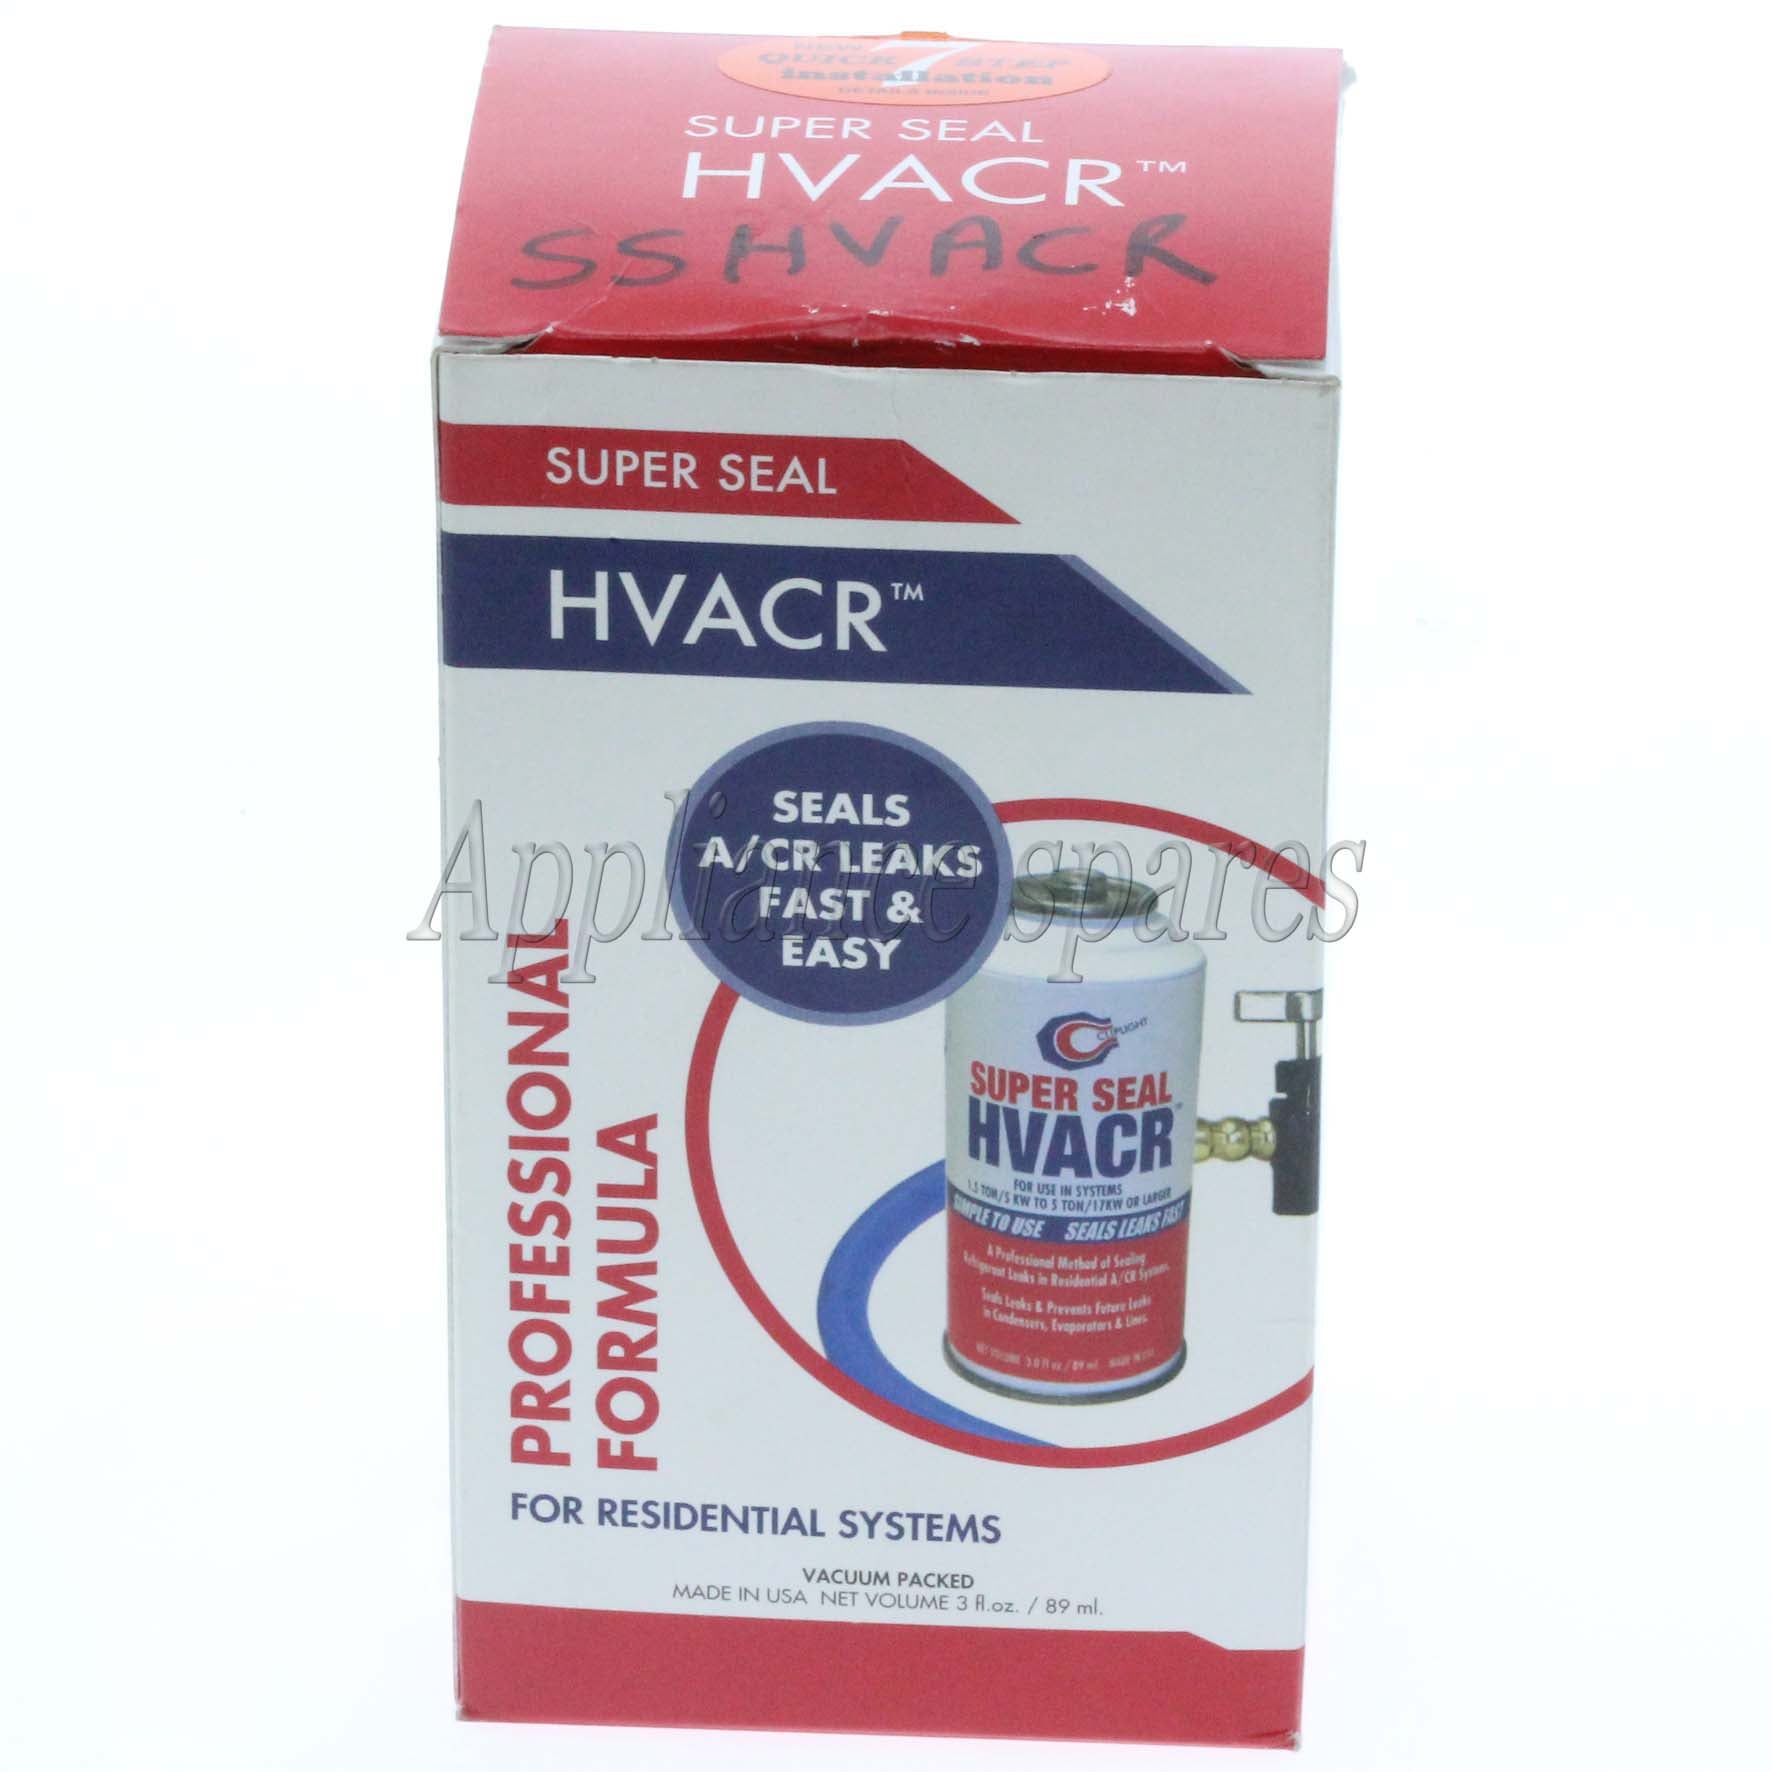 HVACR Super Seal For Small Commercial Fridges